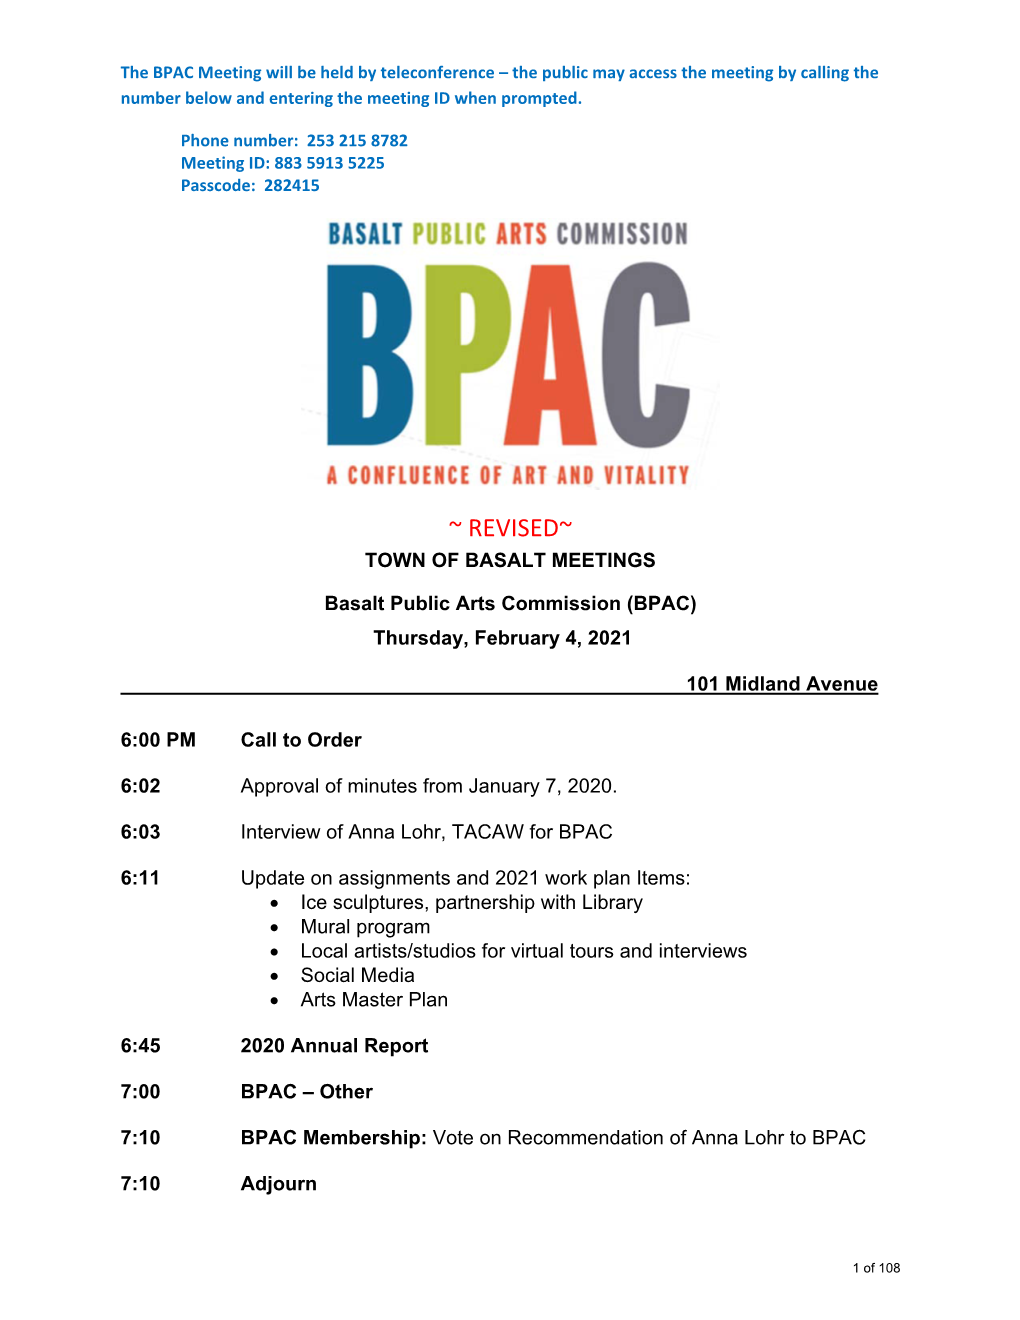 02/04/2021 BPAC Agenda Packet